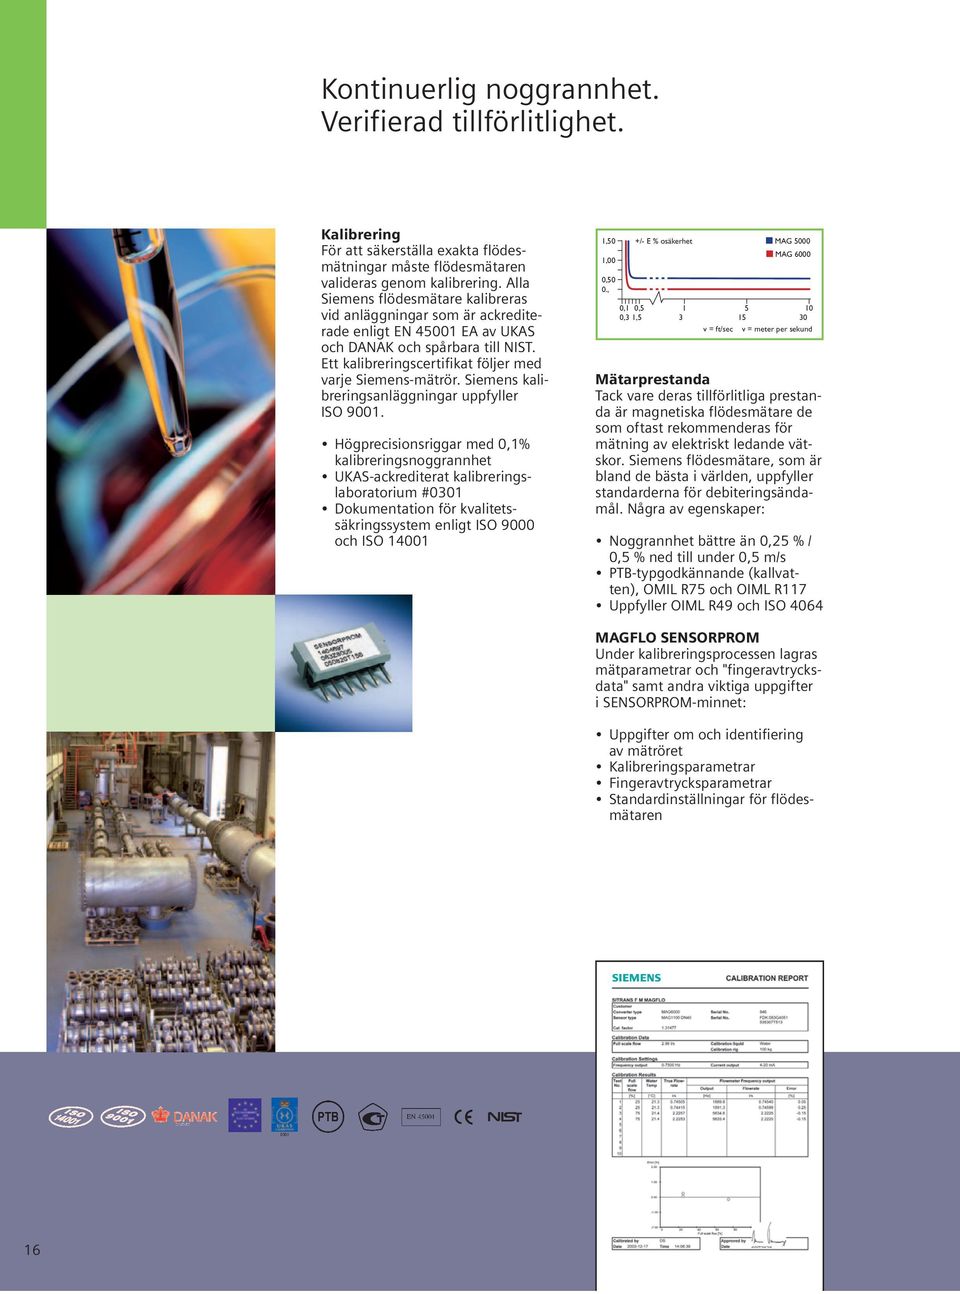 Siemens kalibreringsanläggningar uppfyller ISO 9001.